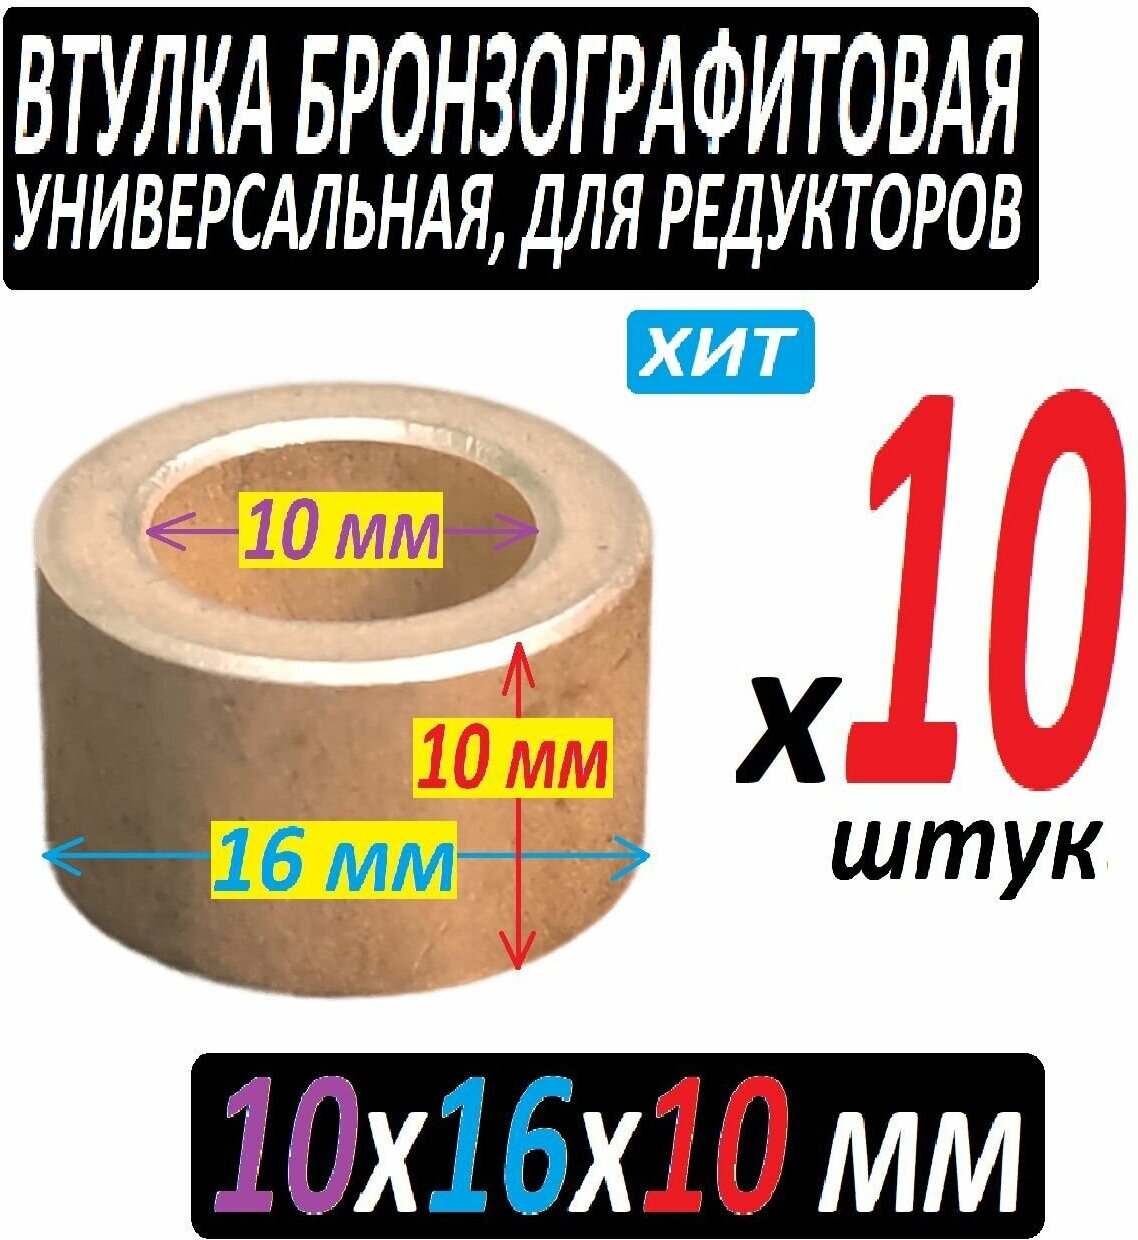 Втулка бронзографтиовая 10x16x10 универсальная - 10 iштук